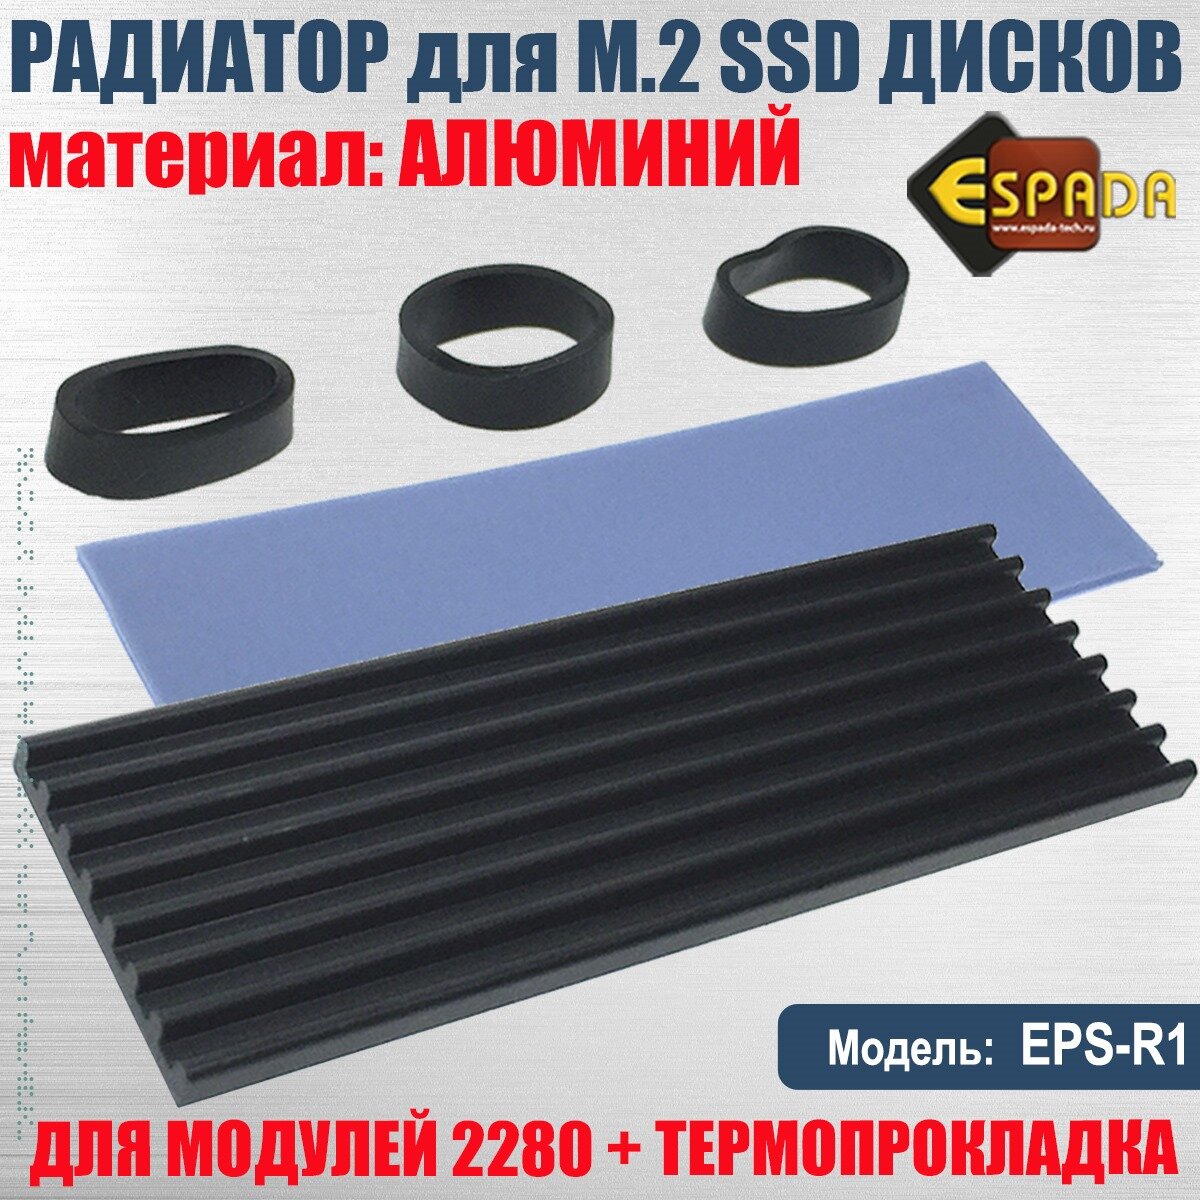 Радиатор для SSD M.2 2280 алюминиевый, модель ESP-R1, Espada